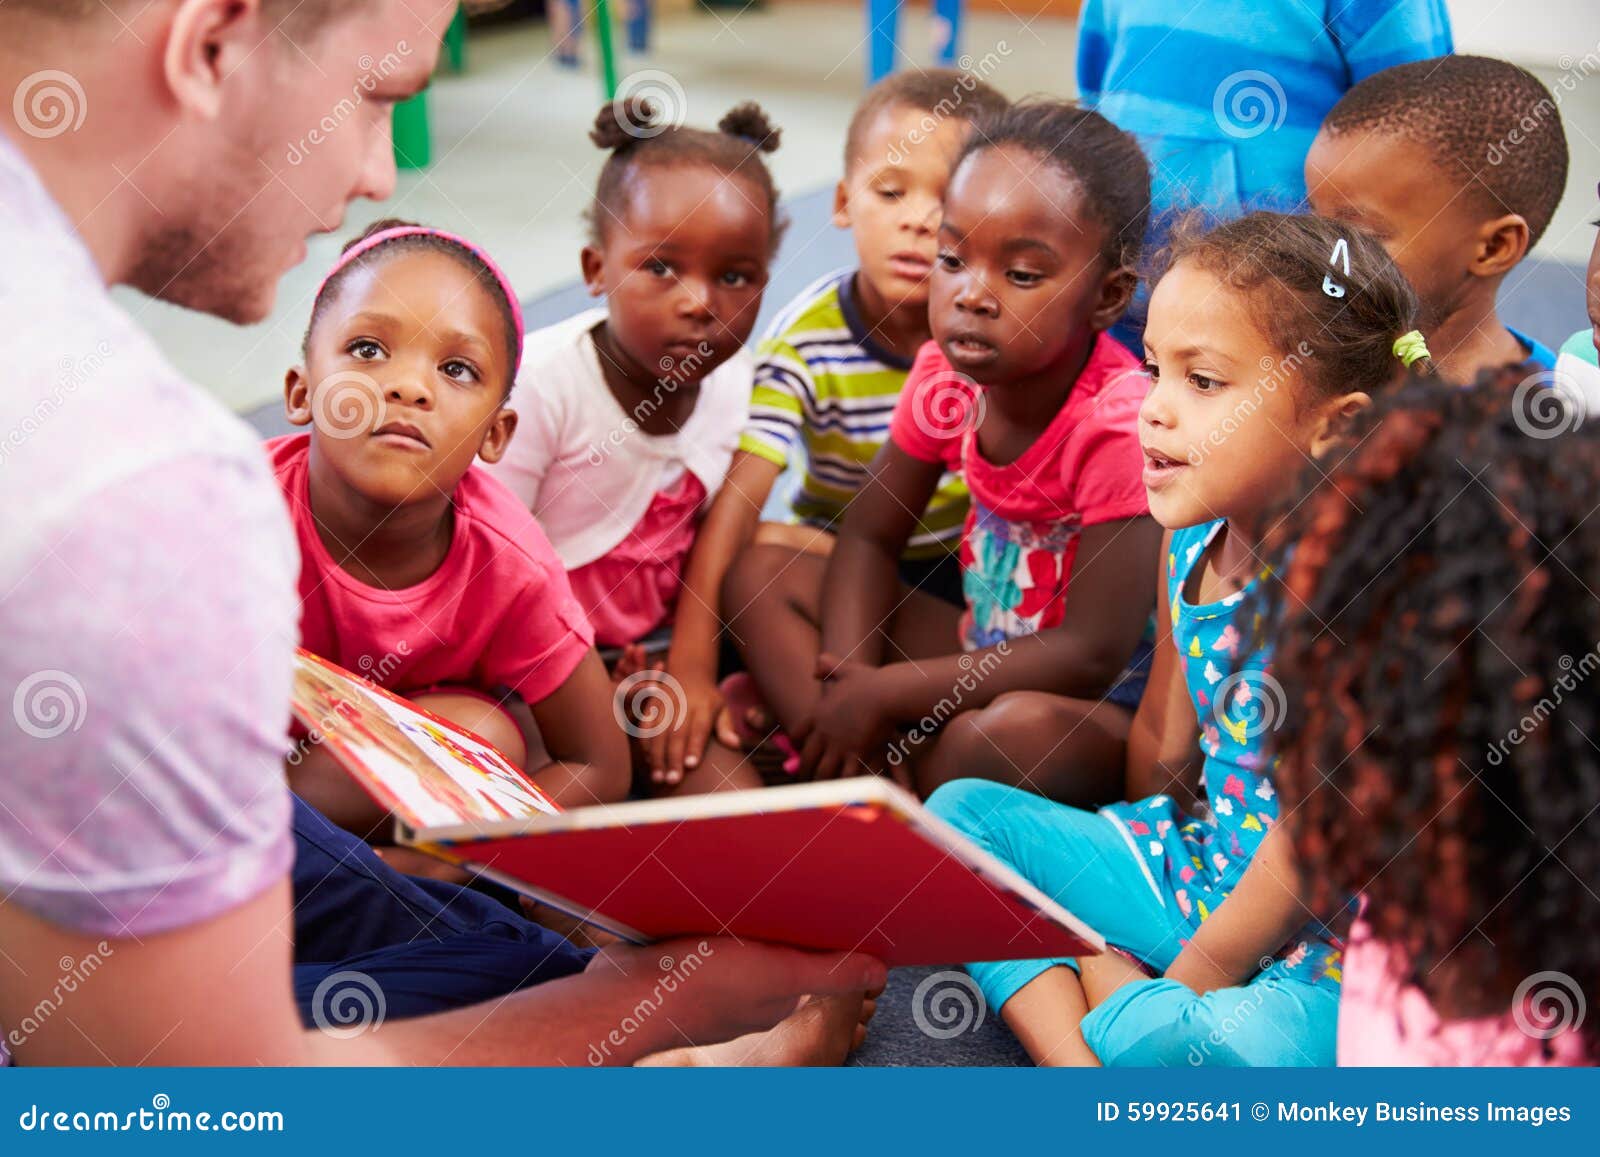 volunteer teacher reading to a class of preschool kids